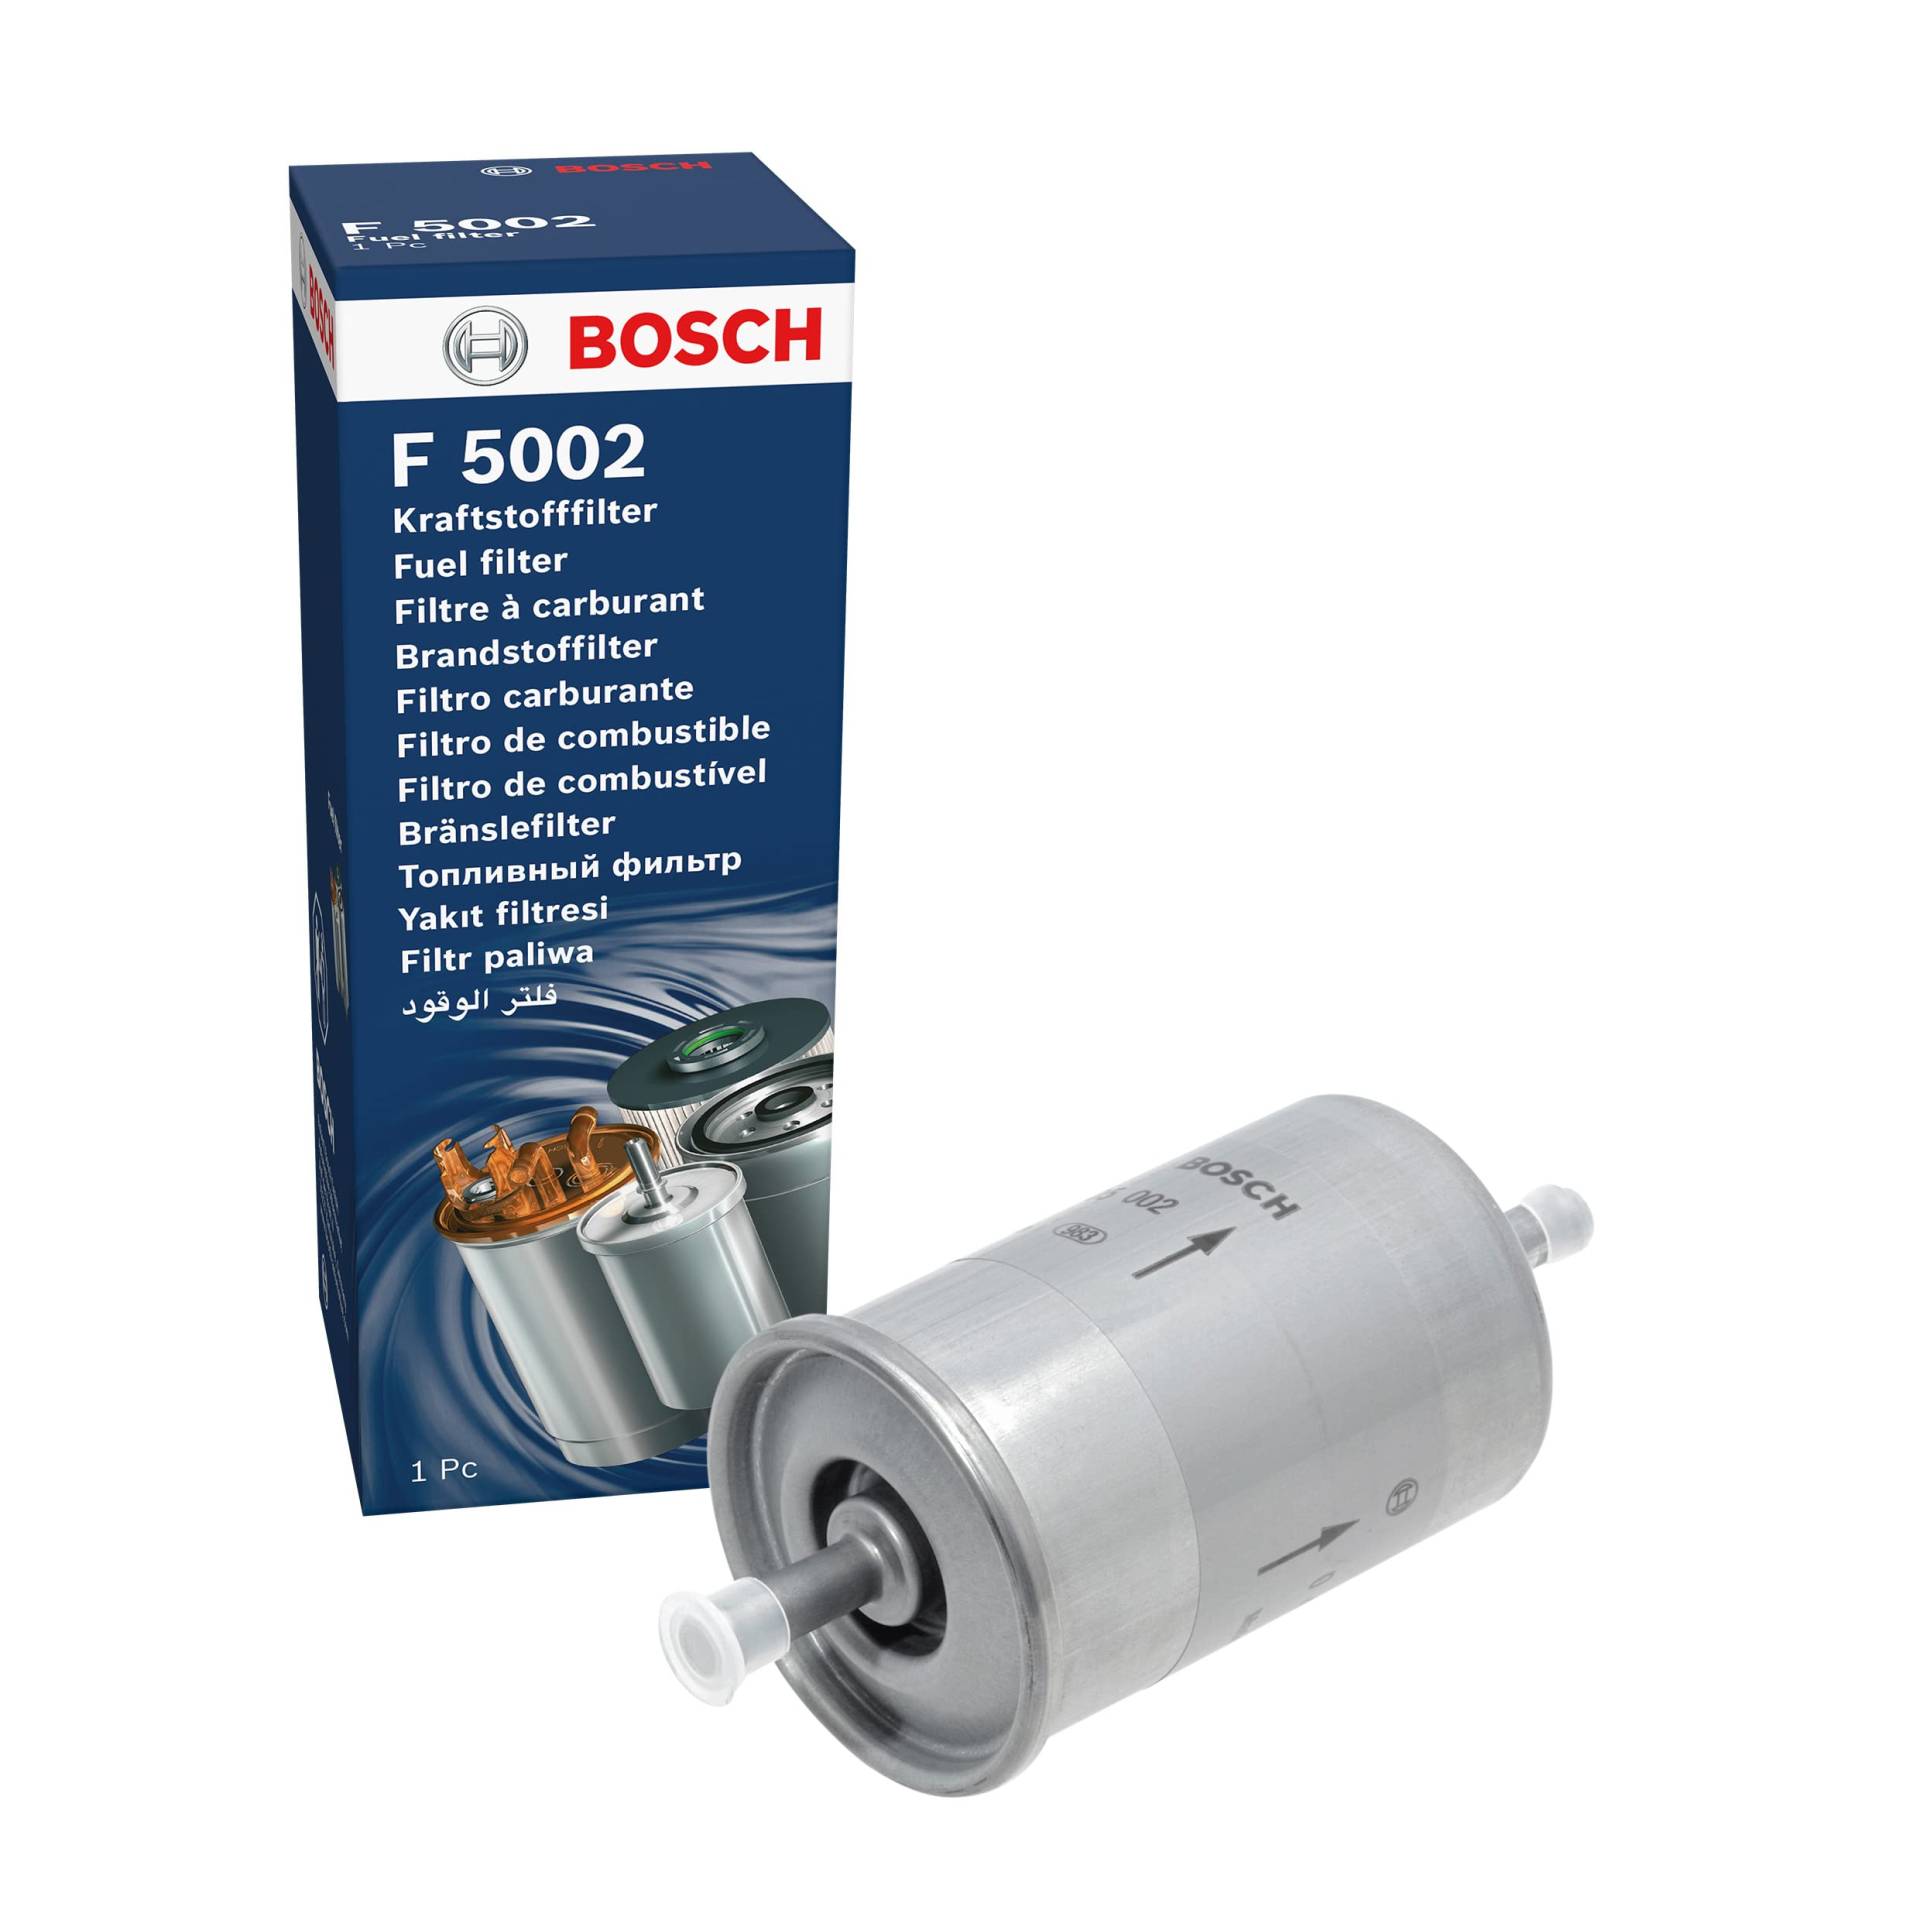 Bosch F5002 - Benzinfilter Auto von Bosch Automotive